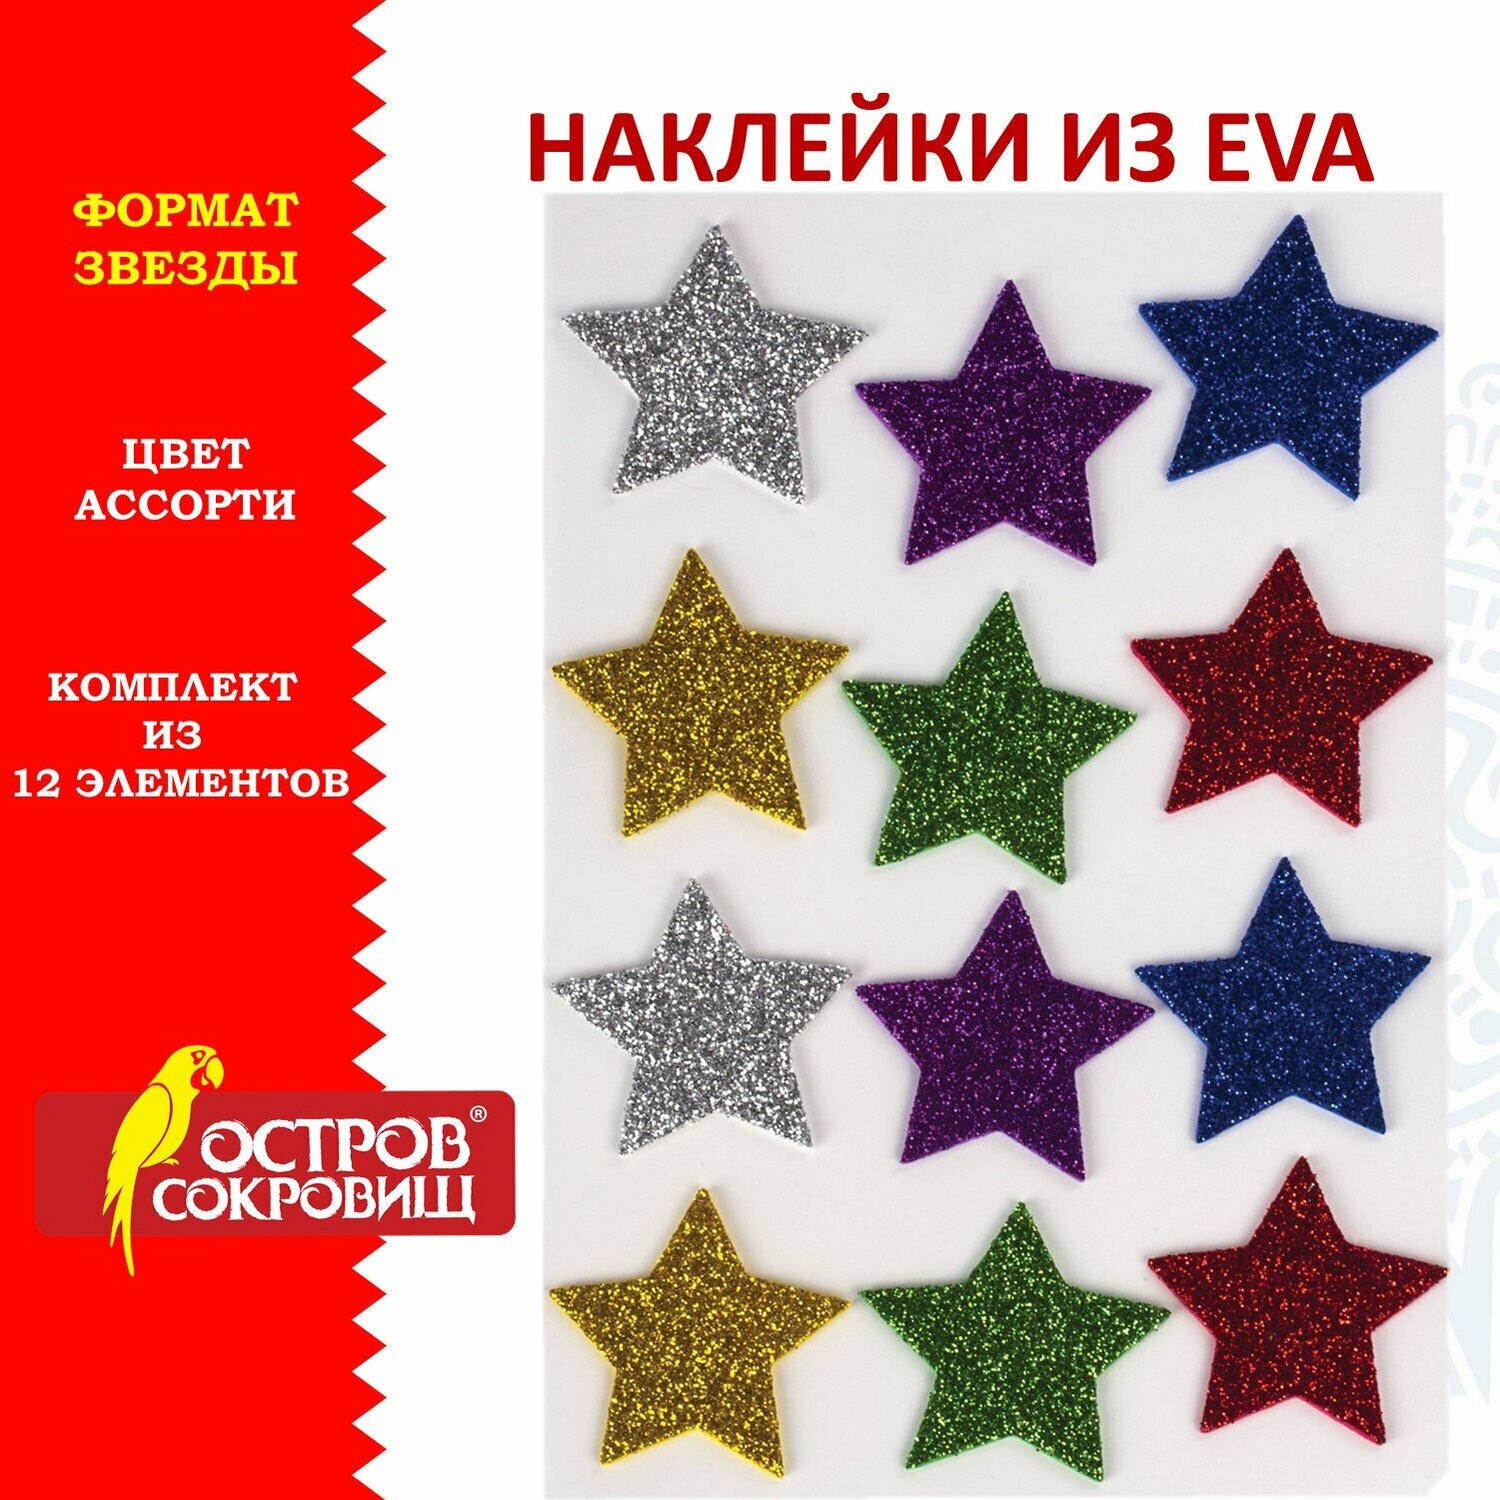 Наклейки из EVA "Звезды", 12 шт, блестящие, ассорти, остров сокровищ, 661452